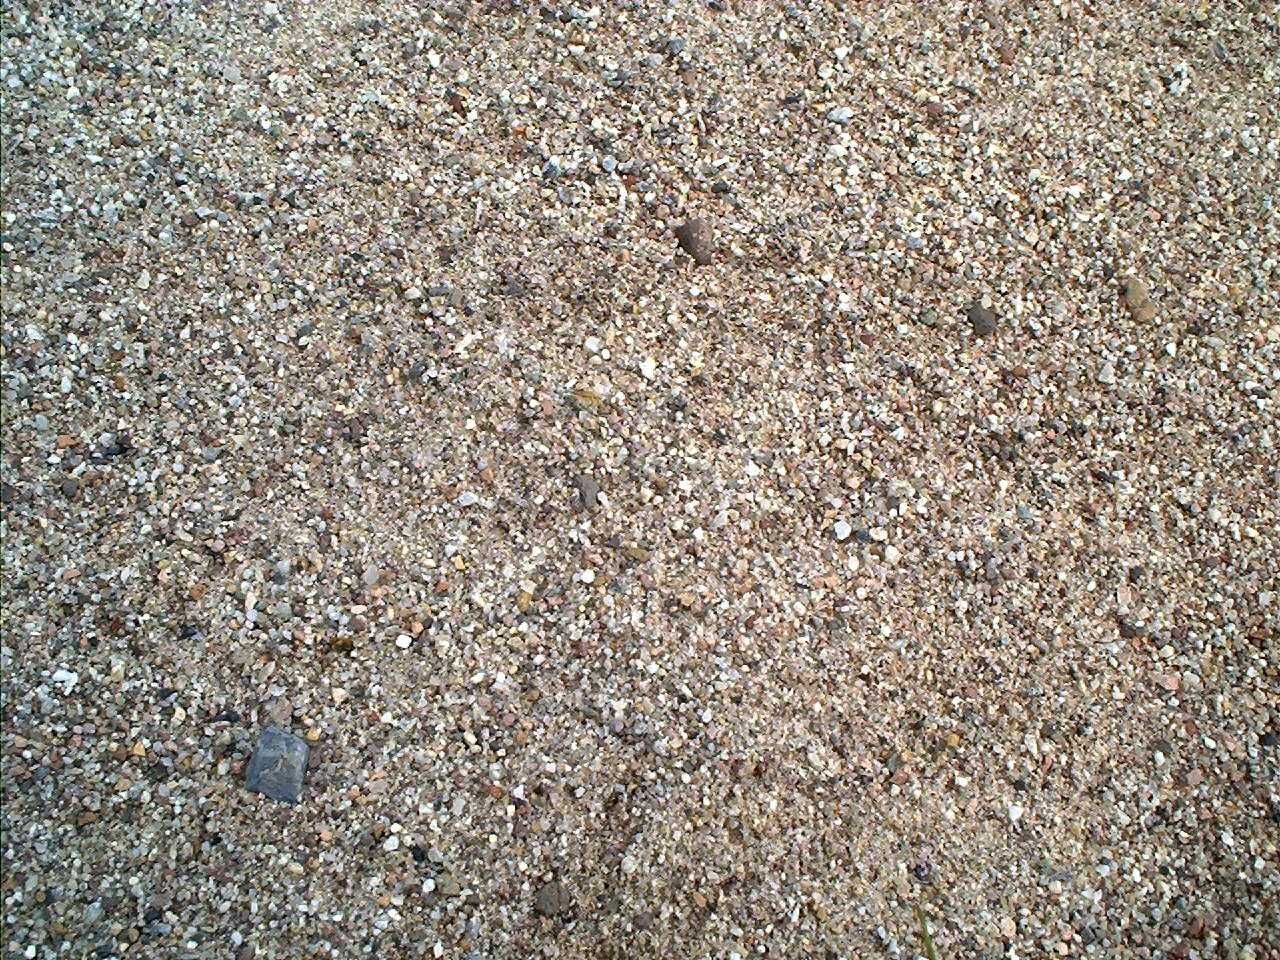 Piasek piach rzeczny posadzki do betonu zaprawy kliniec ziemia żwiry